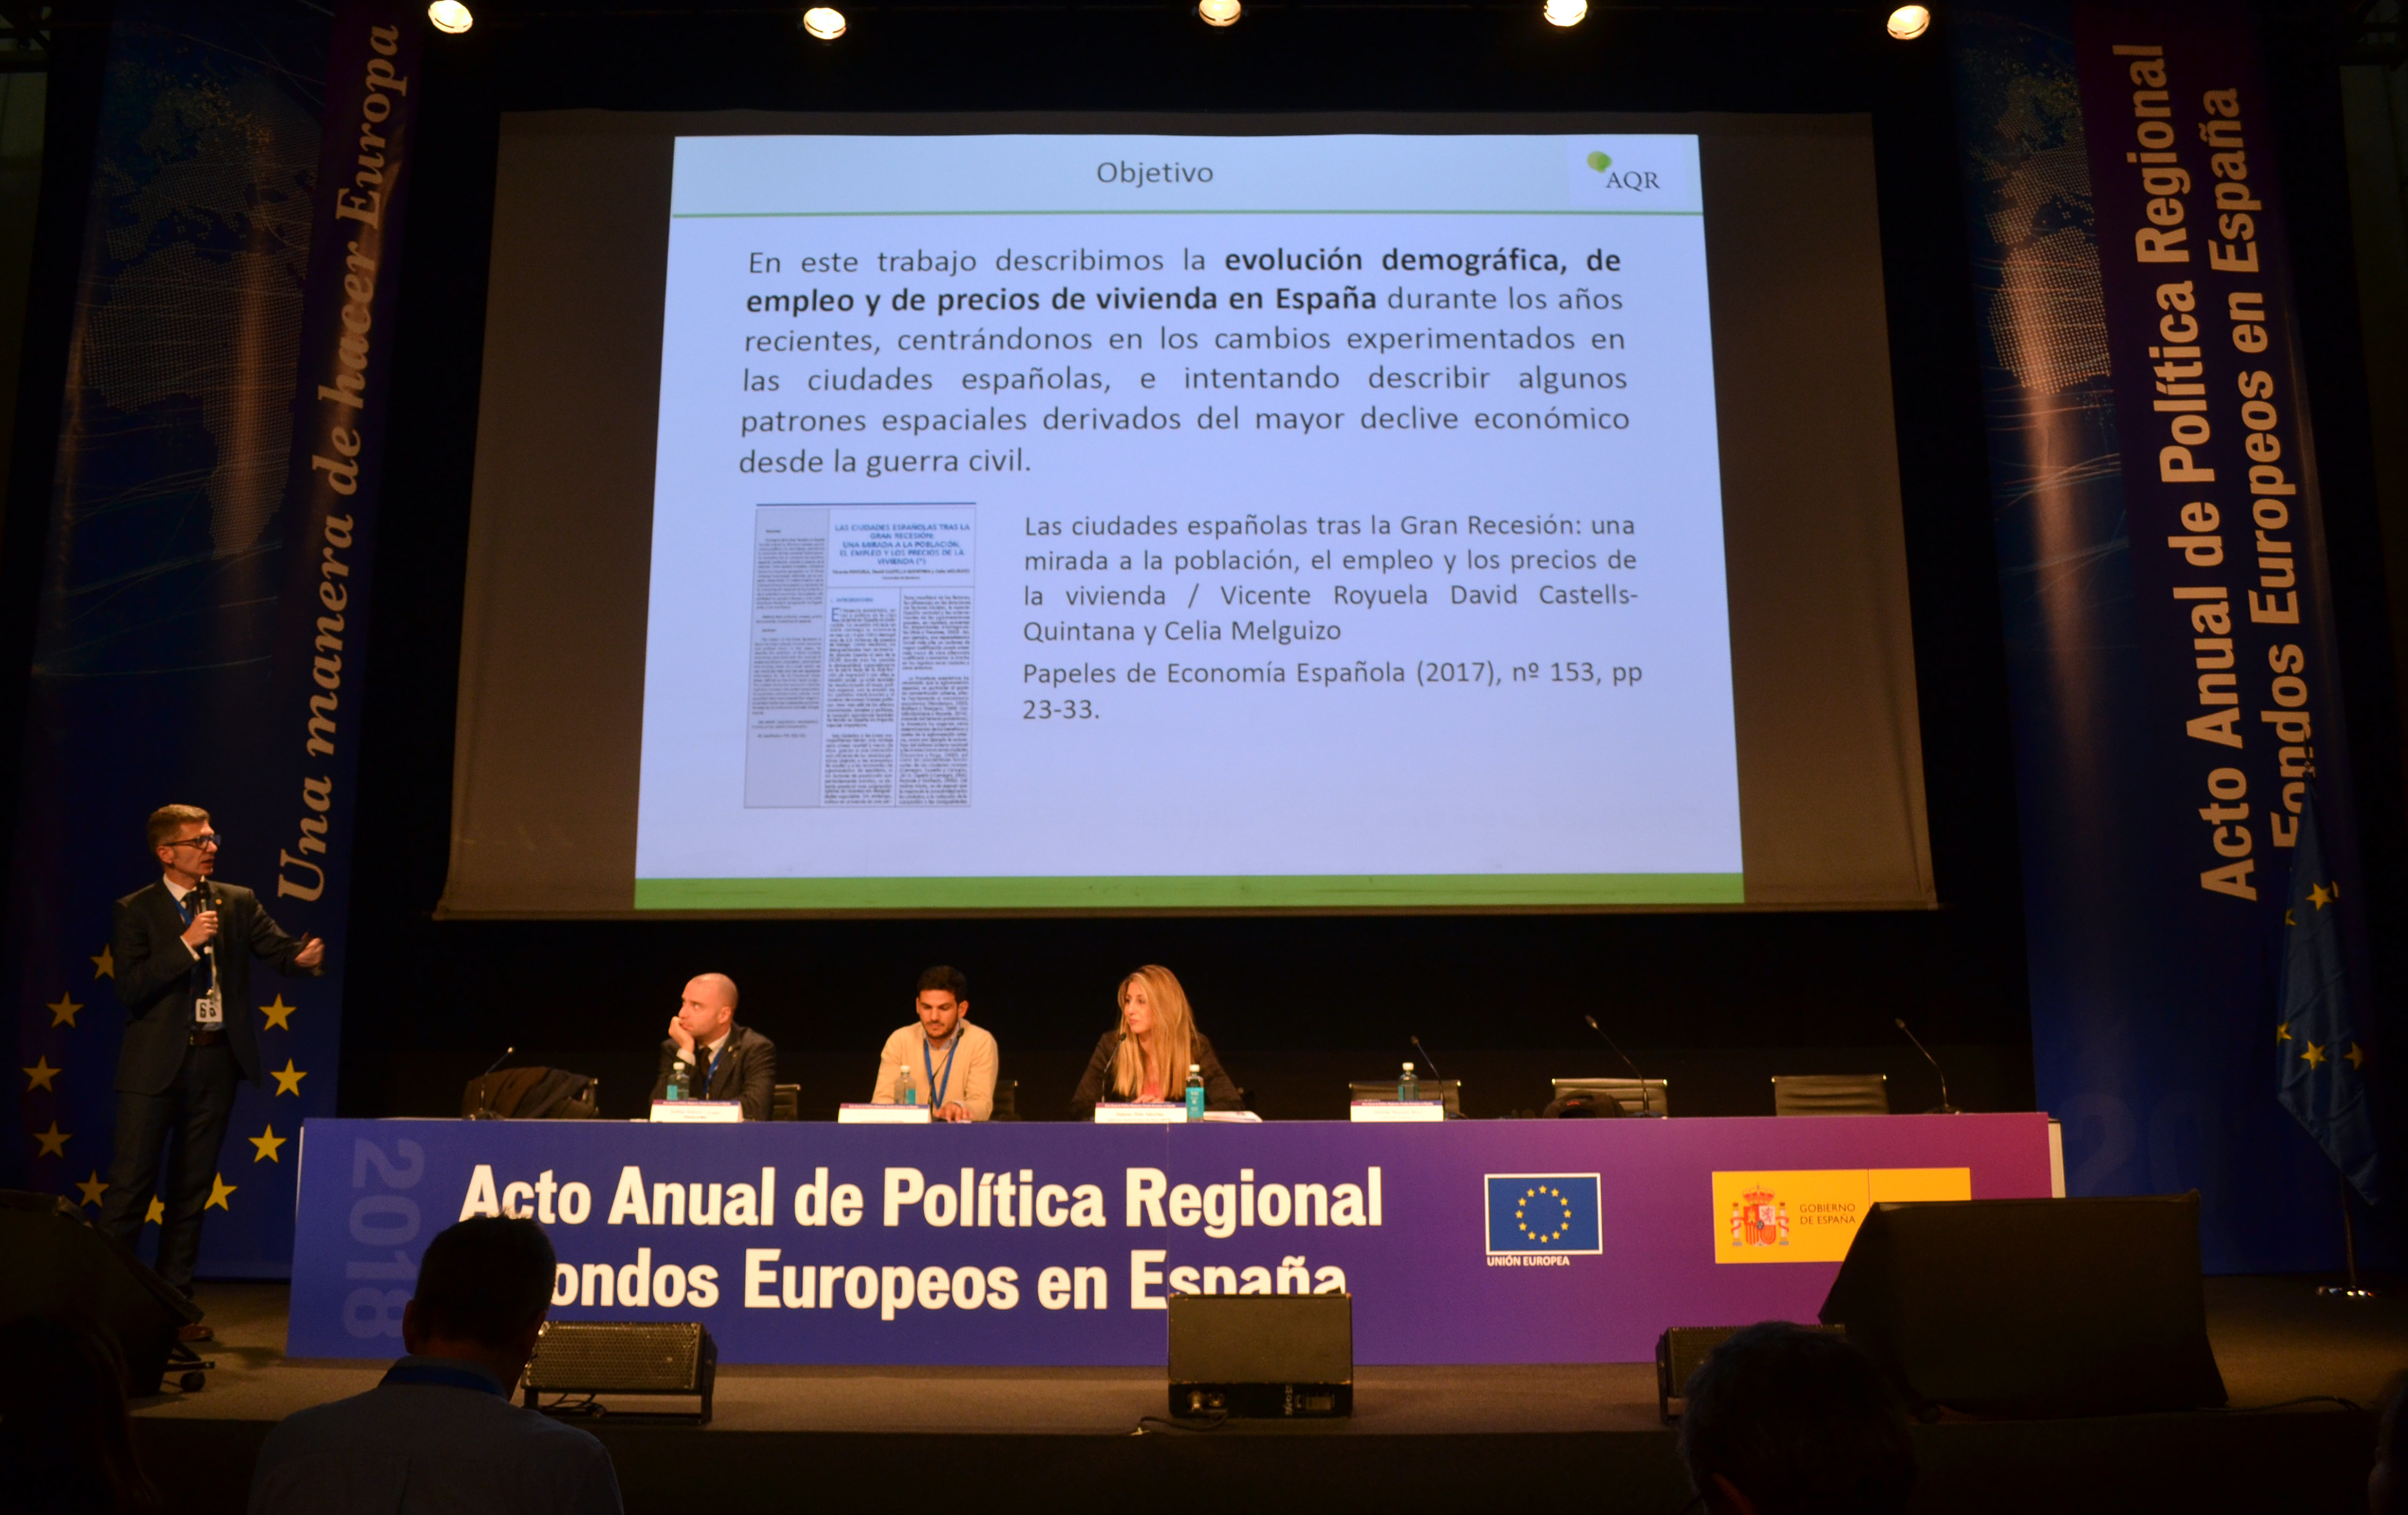 Acto anual sobre Política Regional y Fondos Europeos en España 2017